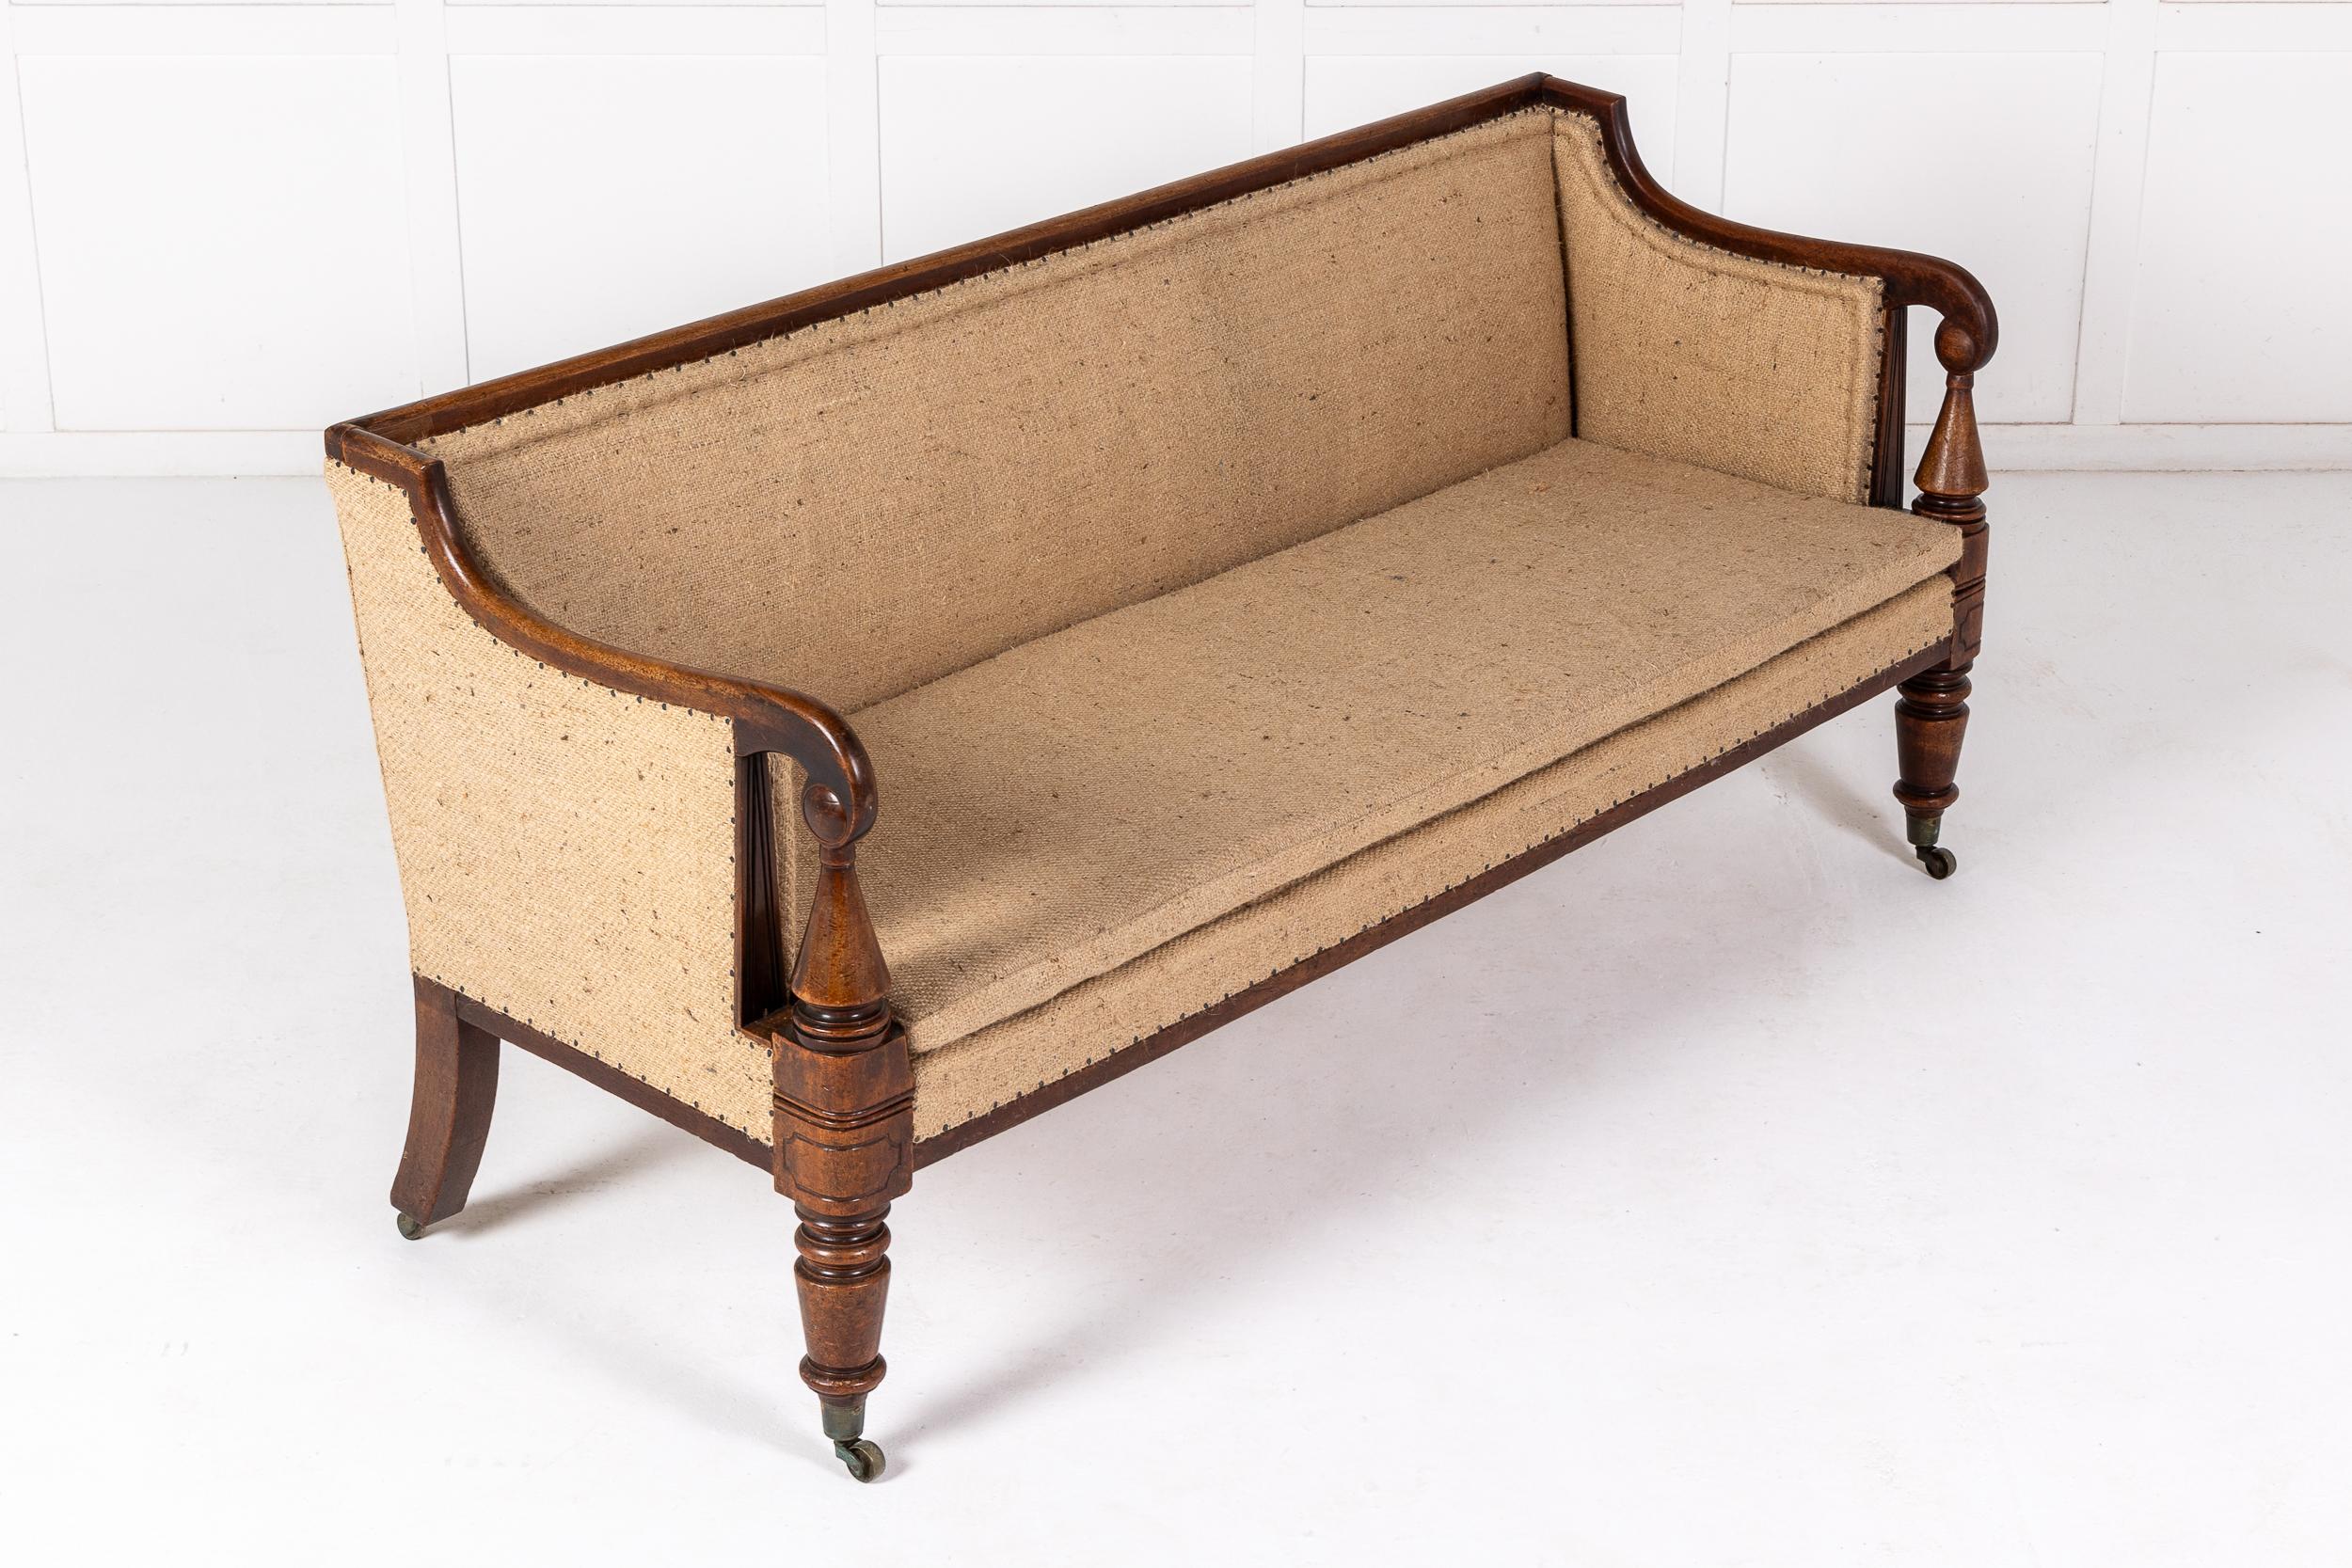 Ein hochwertiges englisches Mahagoni-Sofa oder -Sofa aus der Regency-Zeit um 1820.

Dieses praktische Möbelstück hat eine breit rechteckige Form und eine hohe Qualität mit einer geraden Rückenlehne. Die Armlehnen stehen auf gedrechselten konischen